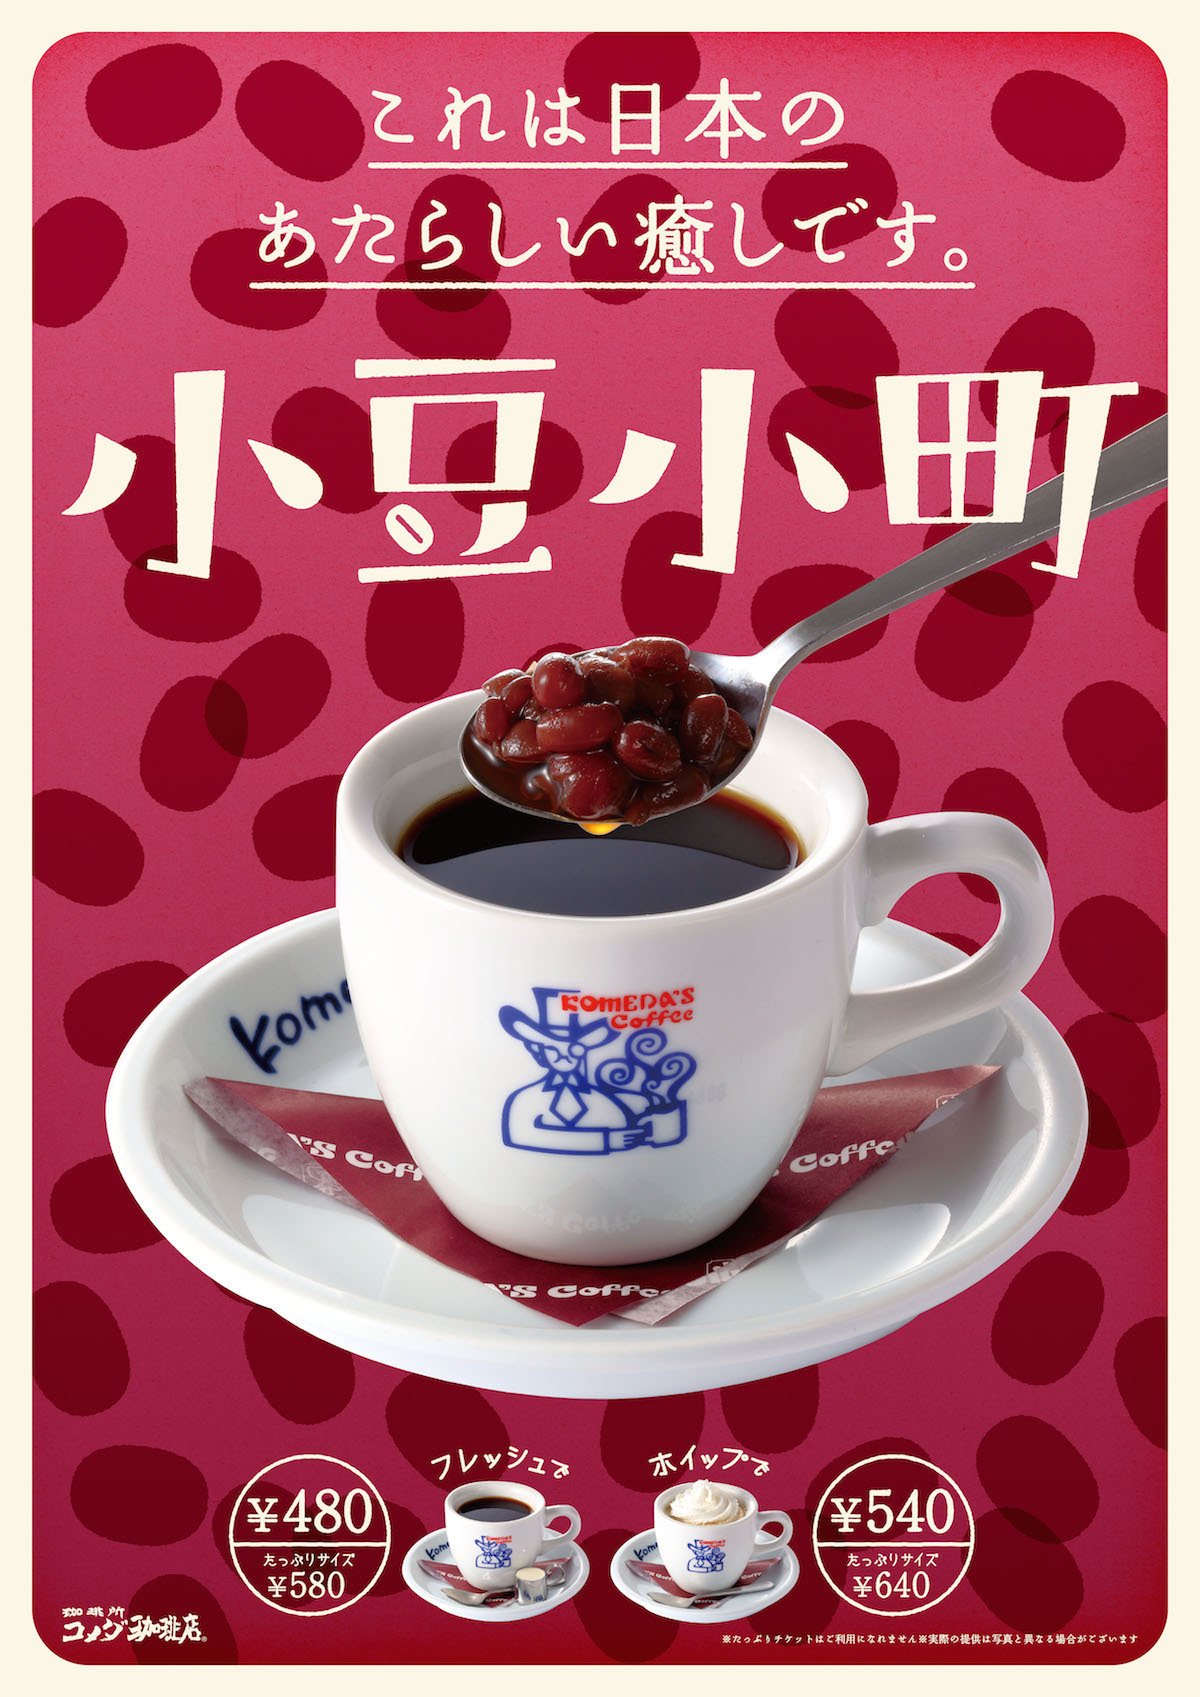 コメダ珈琲店 小豆小町 販売のお知らせ あまとろ とけとろ なデザートコーヒーを 12月14日 月 より販売いたします 株式会社コメダ のプレスリリース